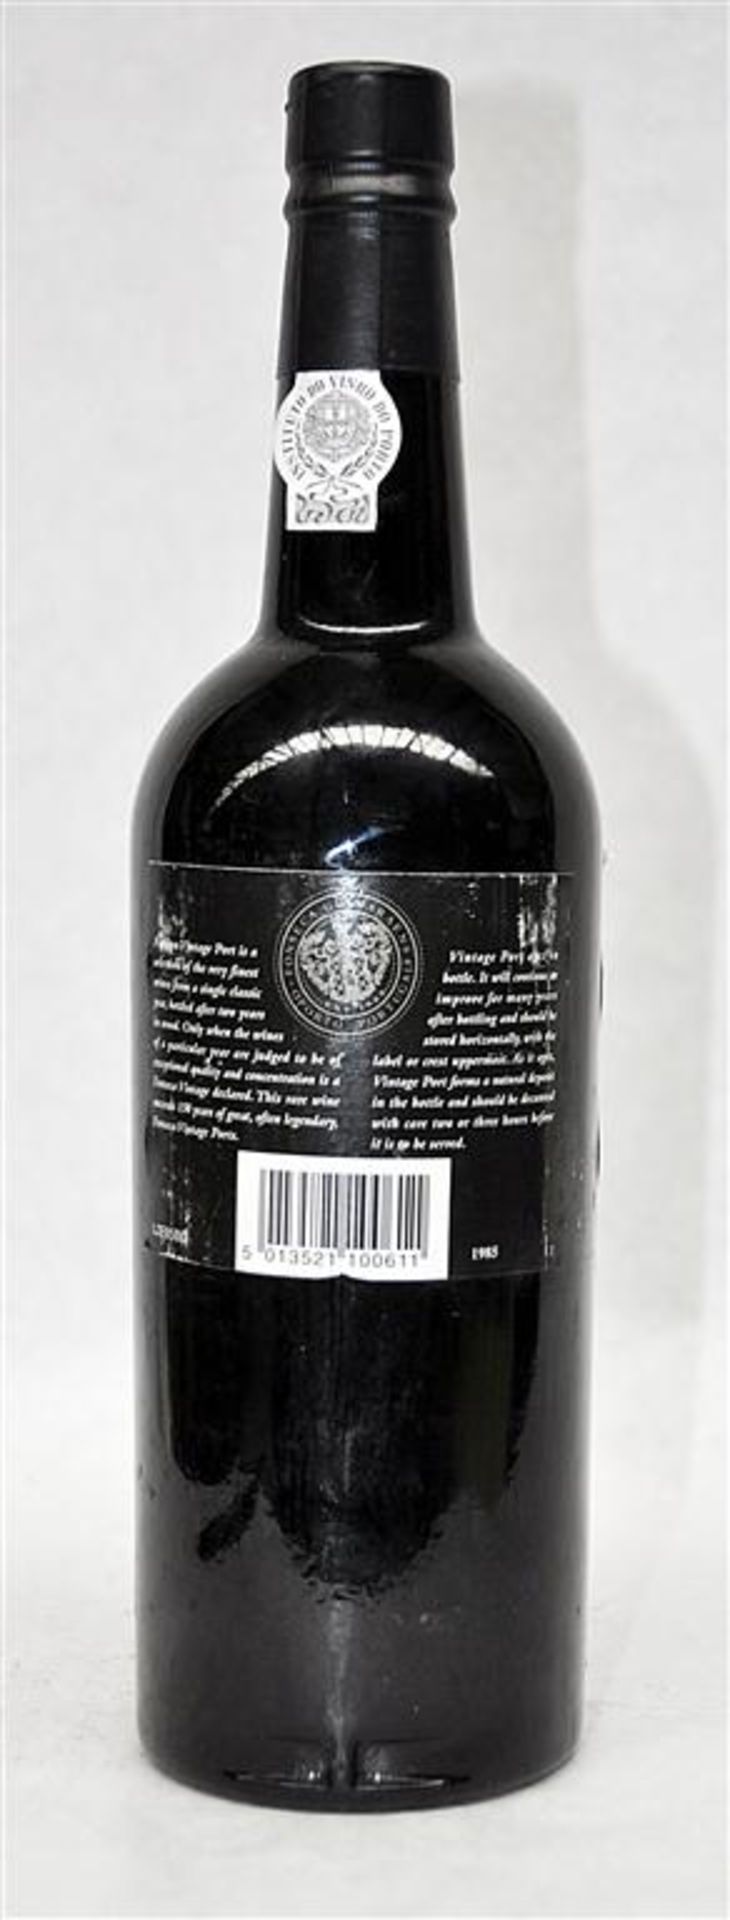 1 x Bottle of Fonseca Vintage Port 1985 - 75cl Bottle Size - 20.5% Volume - Taylor, Fladgate & - Image 3 of 3